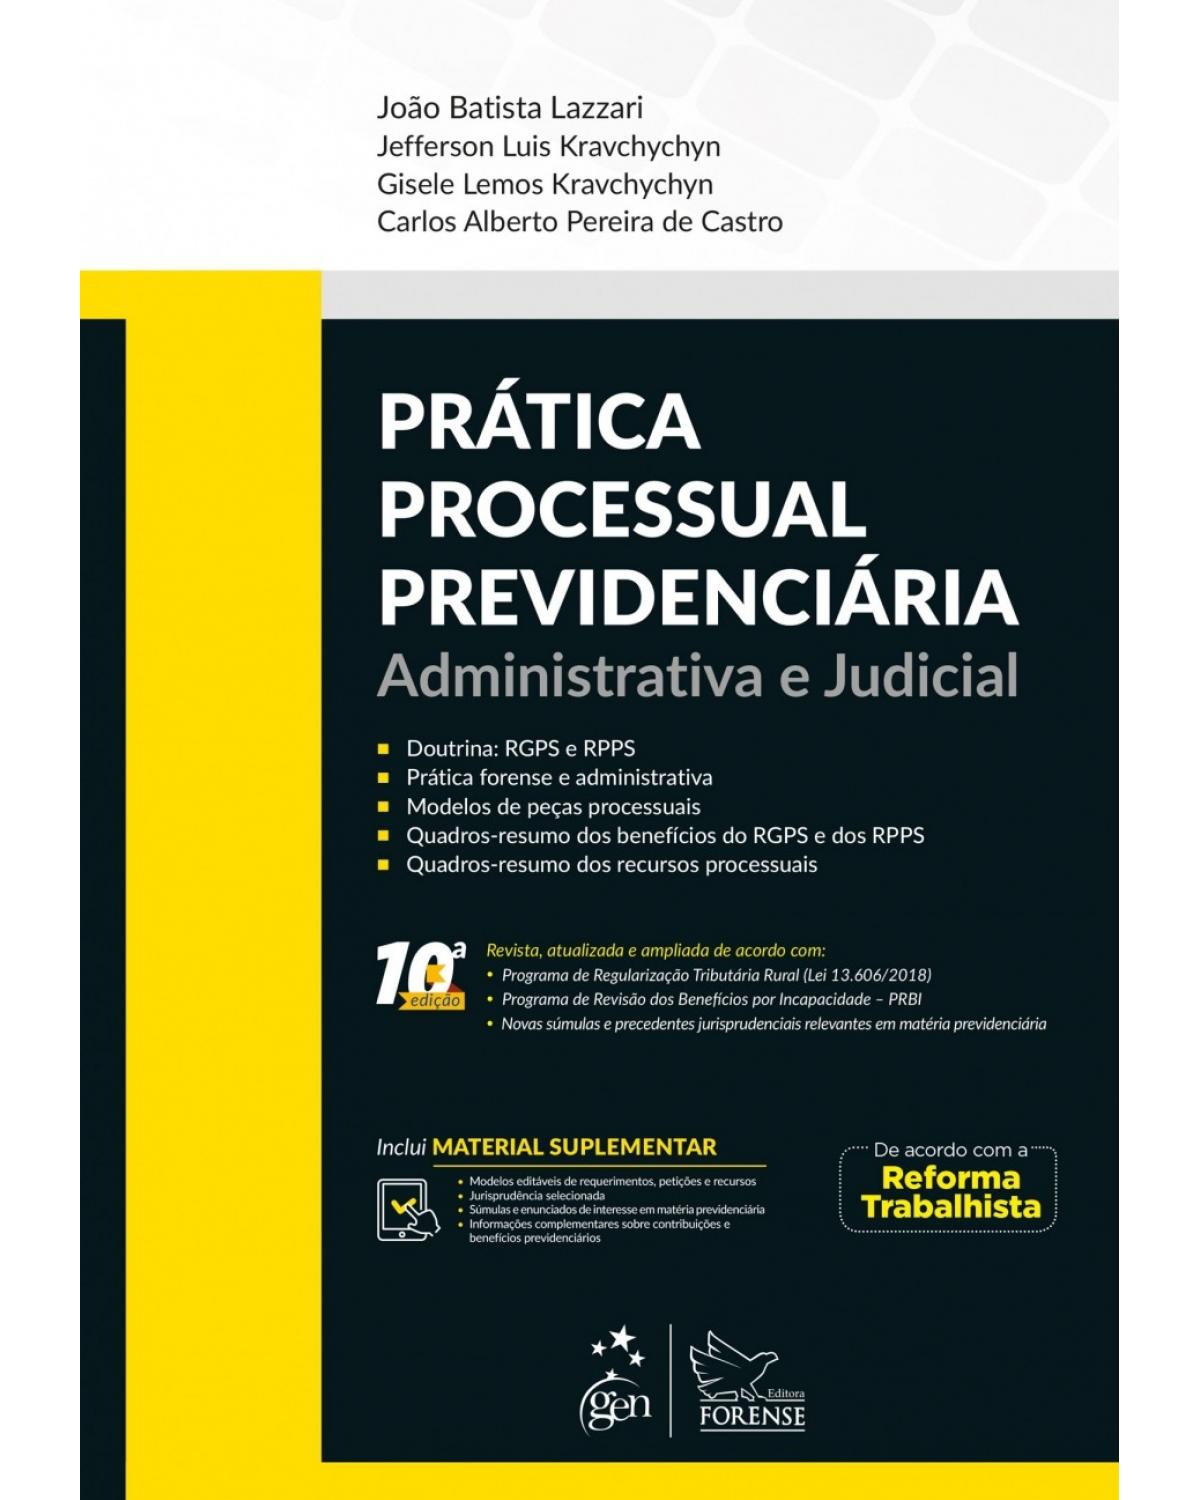 Prática Processual Previdenciária - Administrativa e Judicial - administrativa e judicial - 10ª Edição | 2018